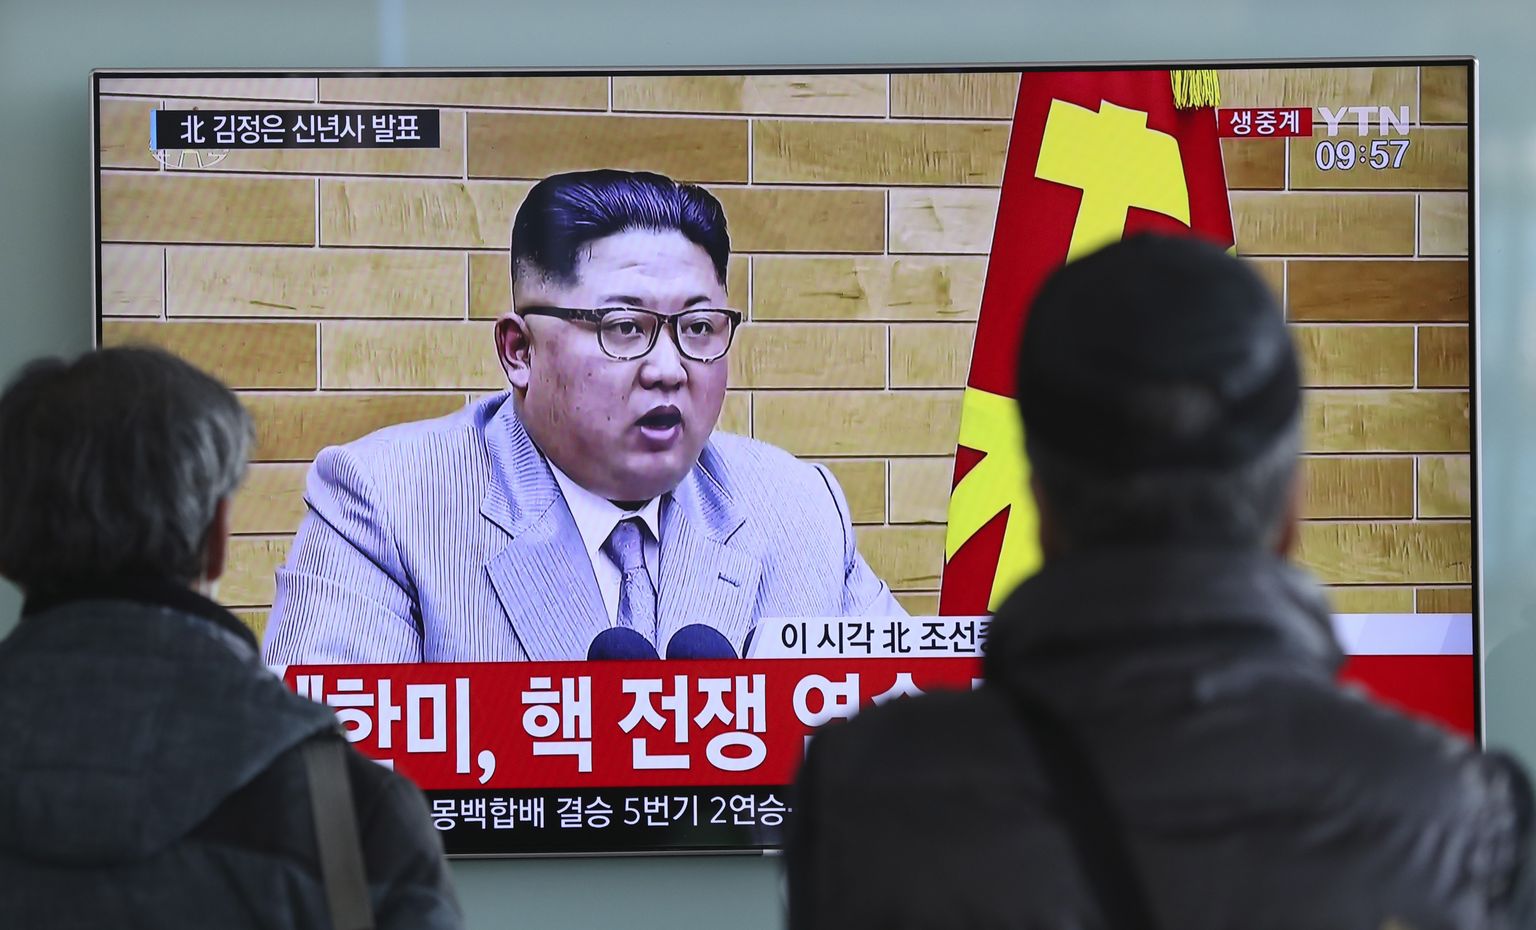 Граждане Южной Кореи смотрят новогоднюю речь Ким Чен Ына.